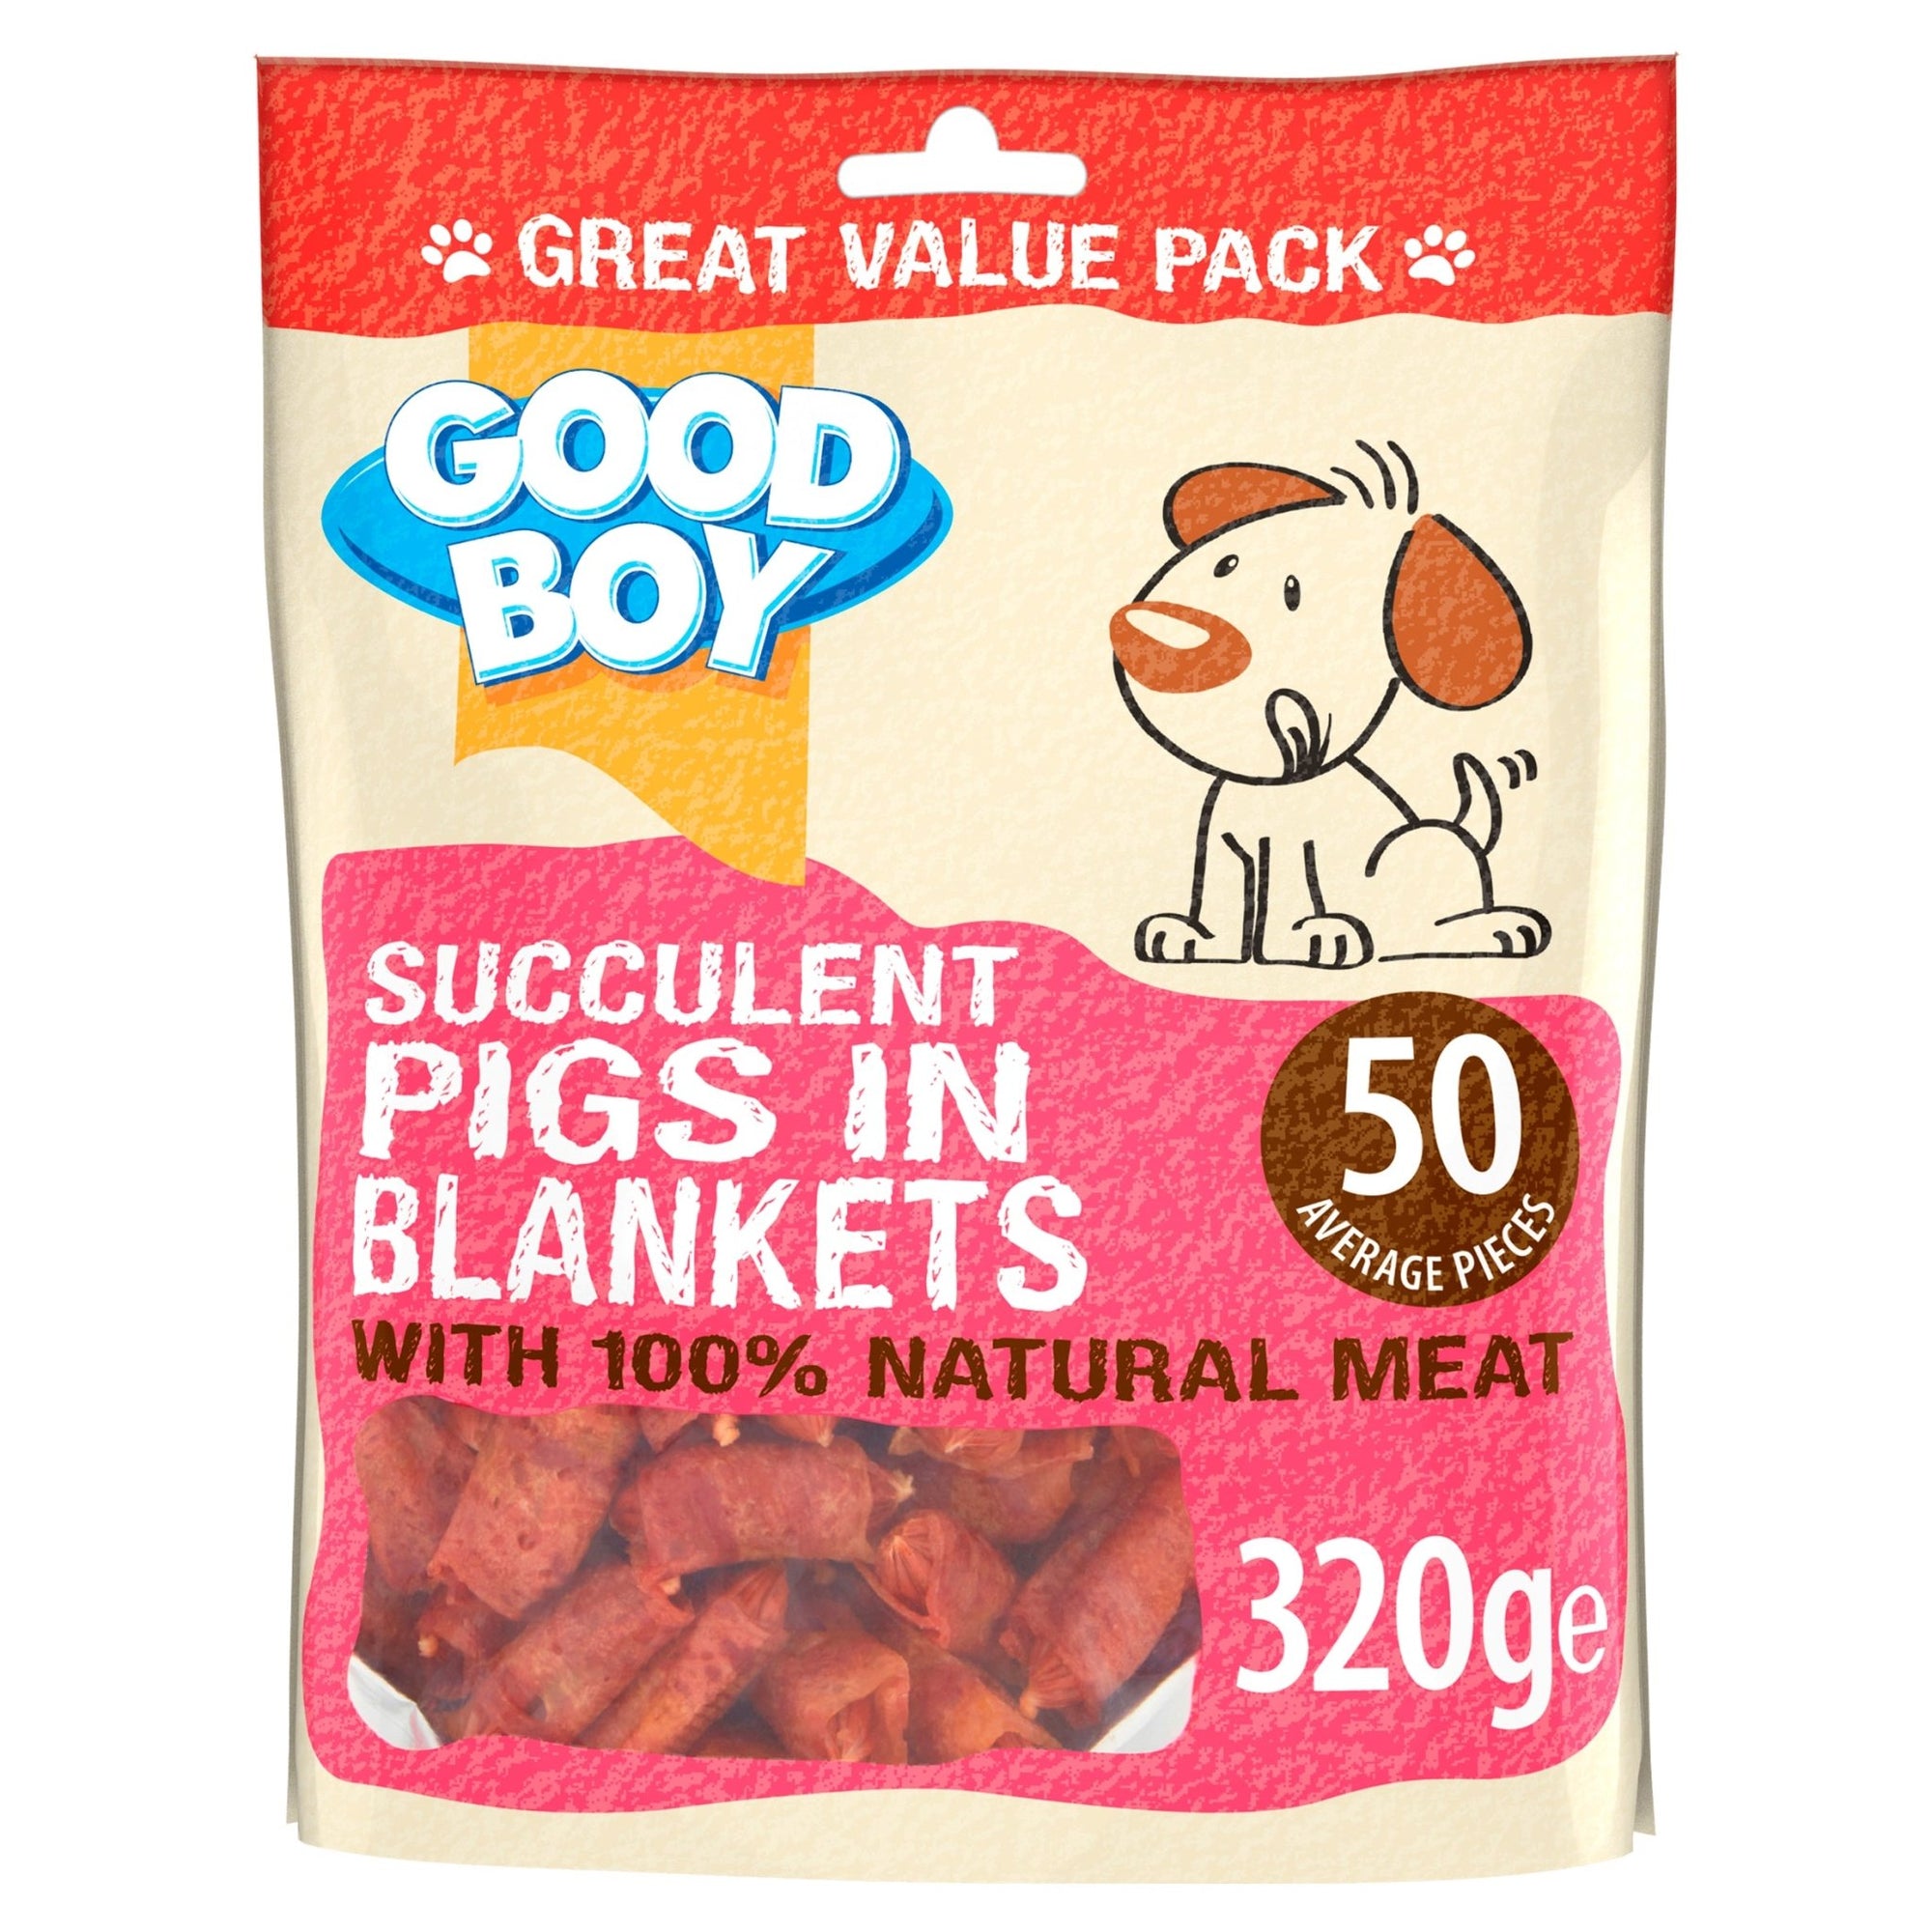 Good Boy Pigs in Blankets 3 x 320g, Good Boy,